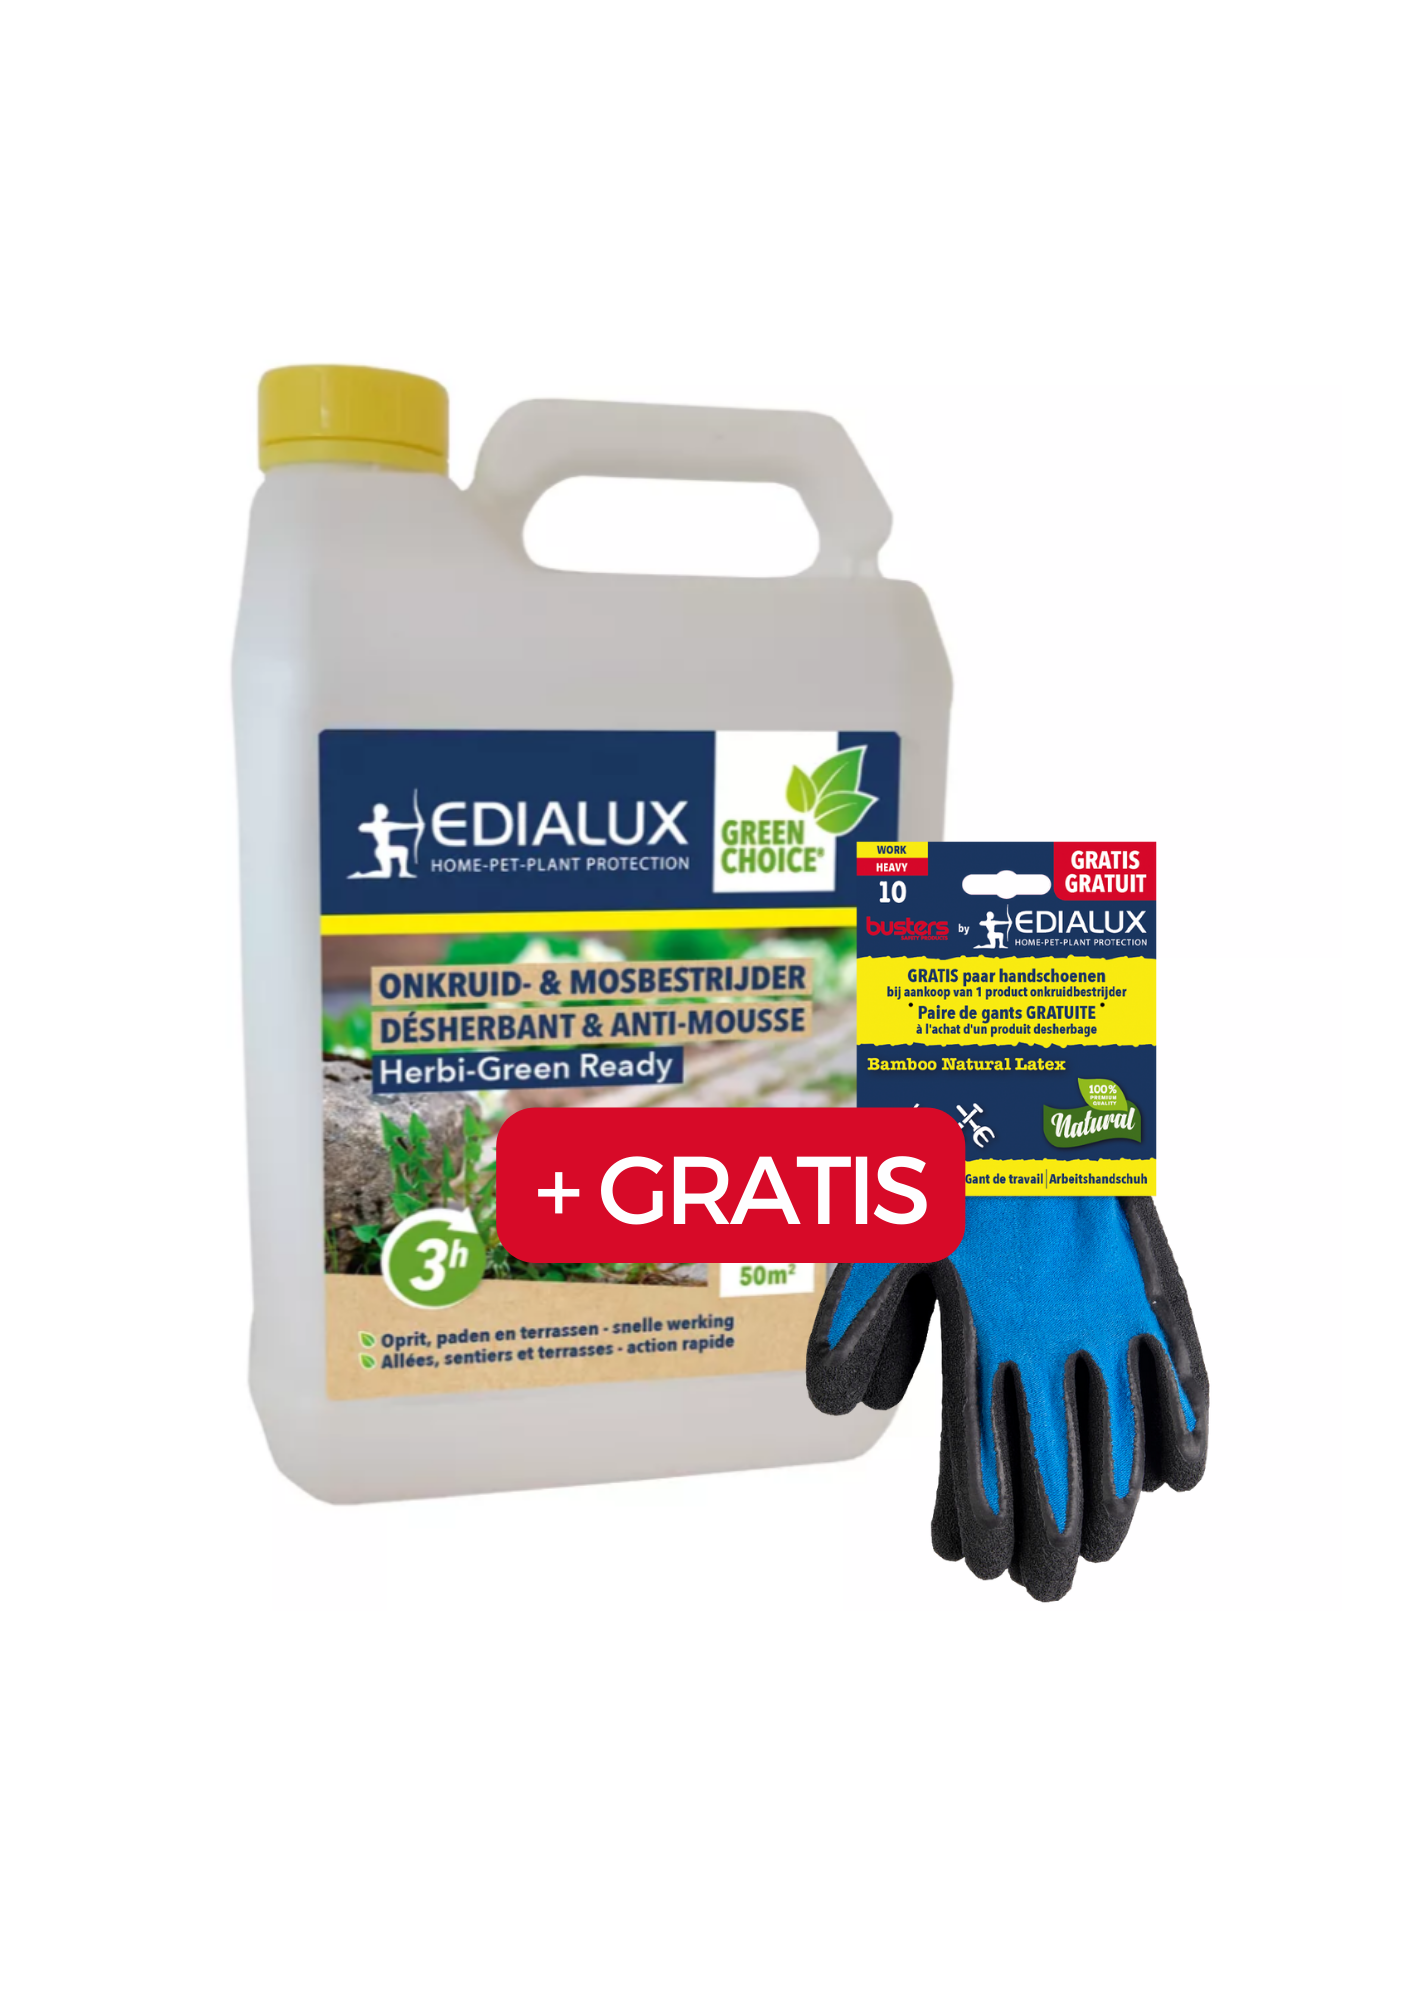 Edialux Herbi-Green Ready: Klaar-voor-gebruik onkruid- en mosbestrijder met gratis werkhandschoenen. Snel en effectief tegen onkruid en mos op paden, terrassen en opritten